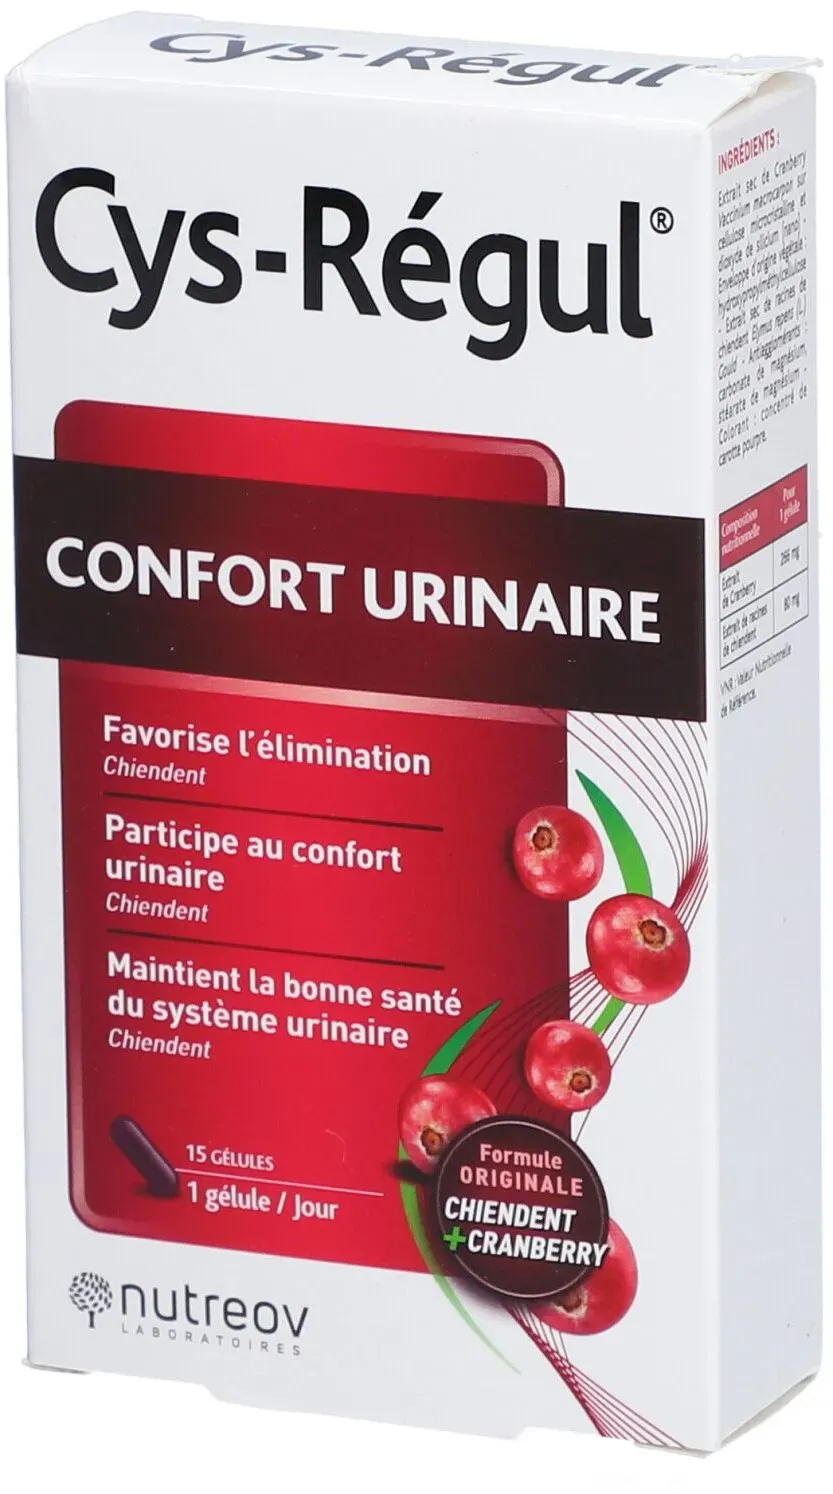 CYS-RÉGUL CONFORT URINAIRE - Gélule, complément alimentaire pour le confort urinaire. - b 15 capsule(s)